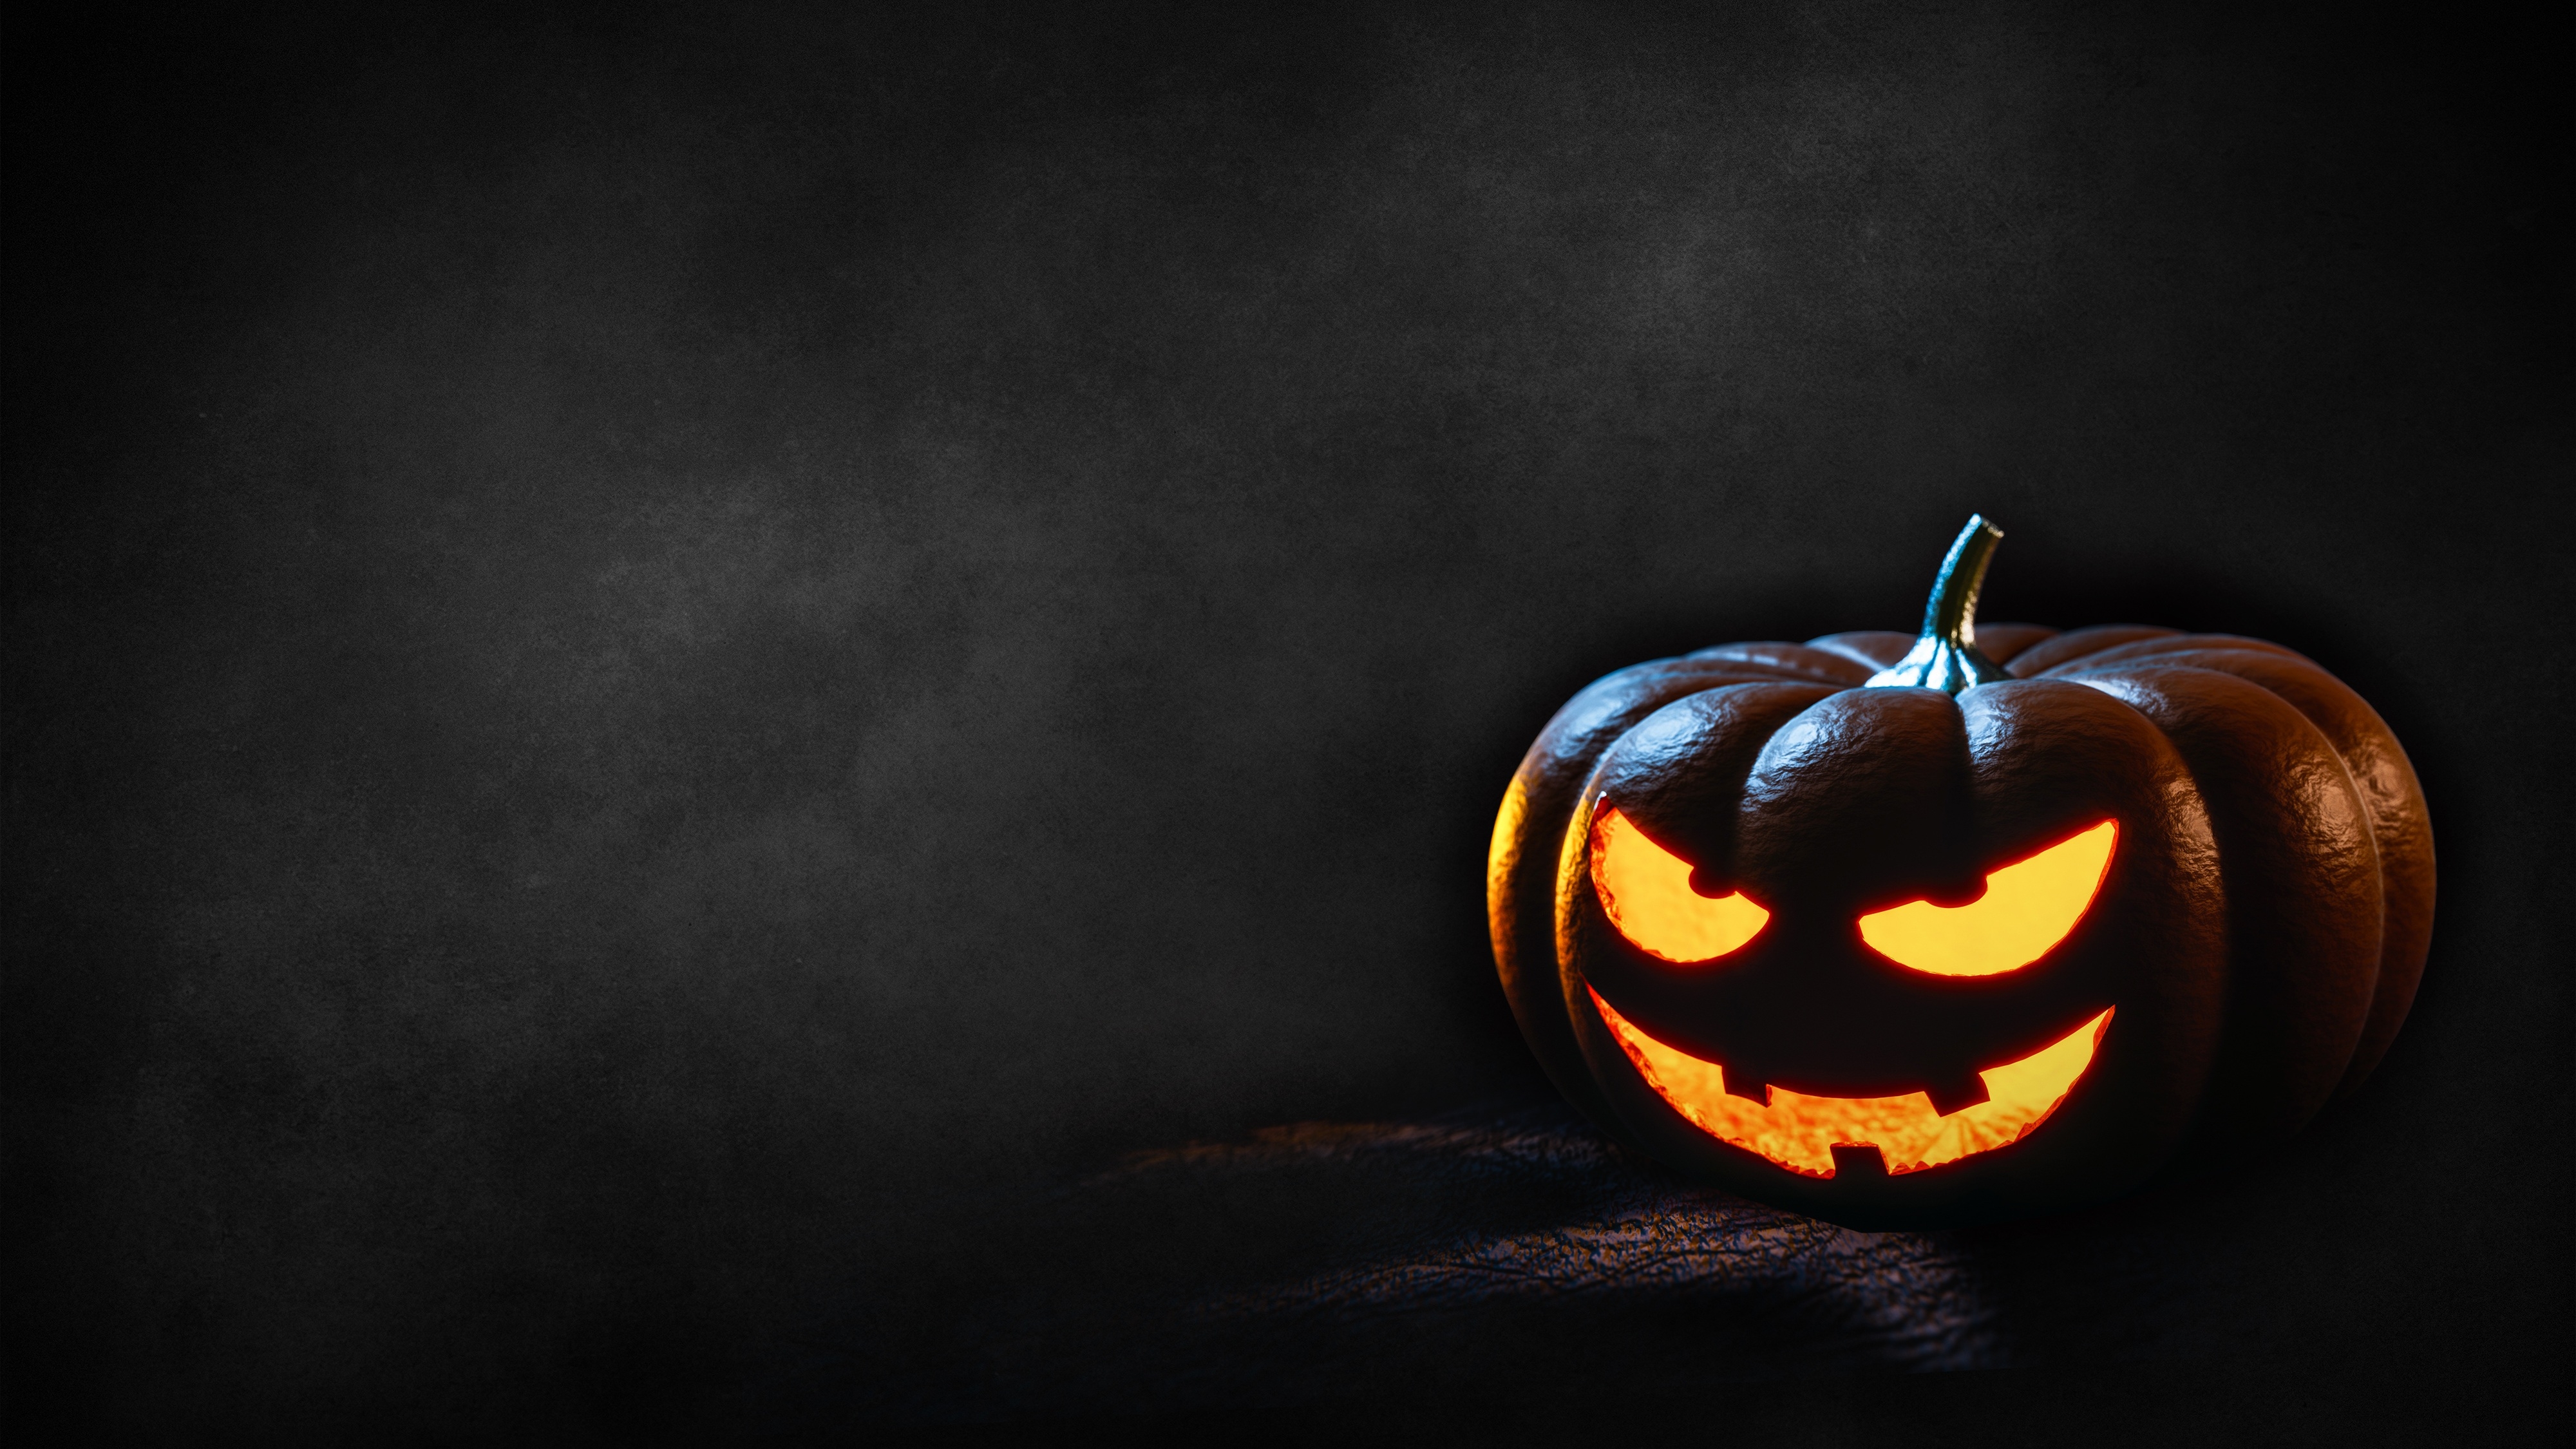 HD wallpaper, Glowing, Halloween Pumpkin, Dark, Scary